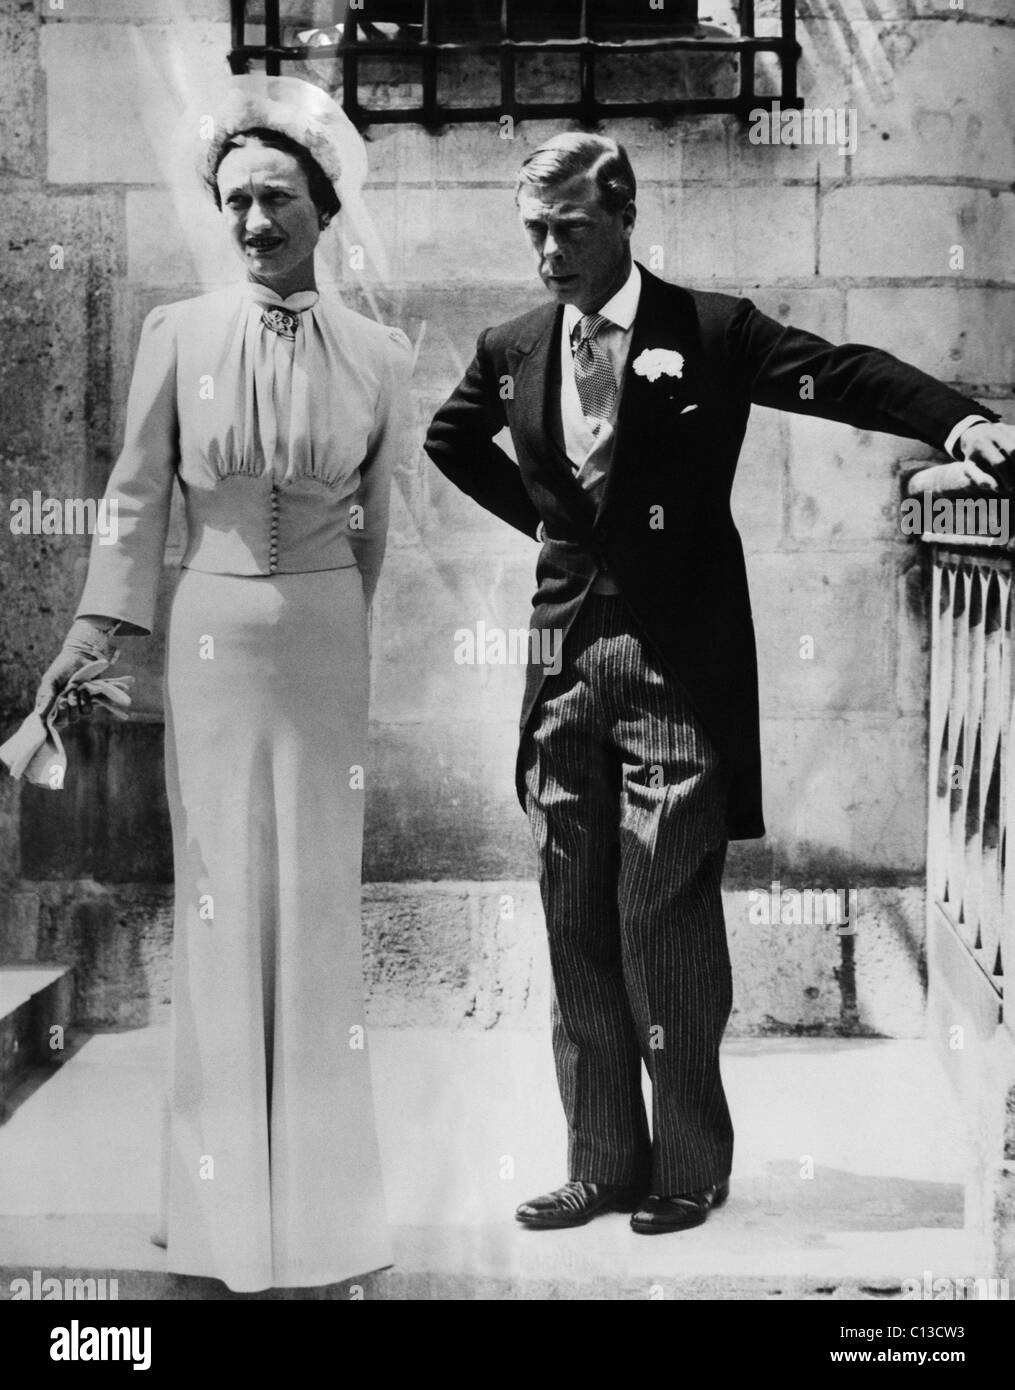 La Duchesse de Windsor, Wallis Simpson et le Prince Edward, duc de Windsor le jour de leur mariage, Chateau de Cande, Monts, France, le 3 juin 1937. Banque D'Images